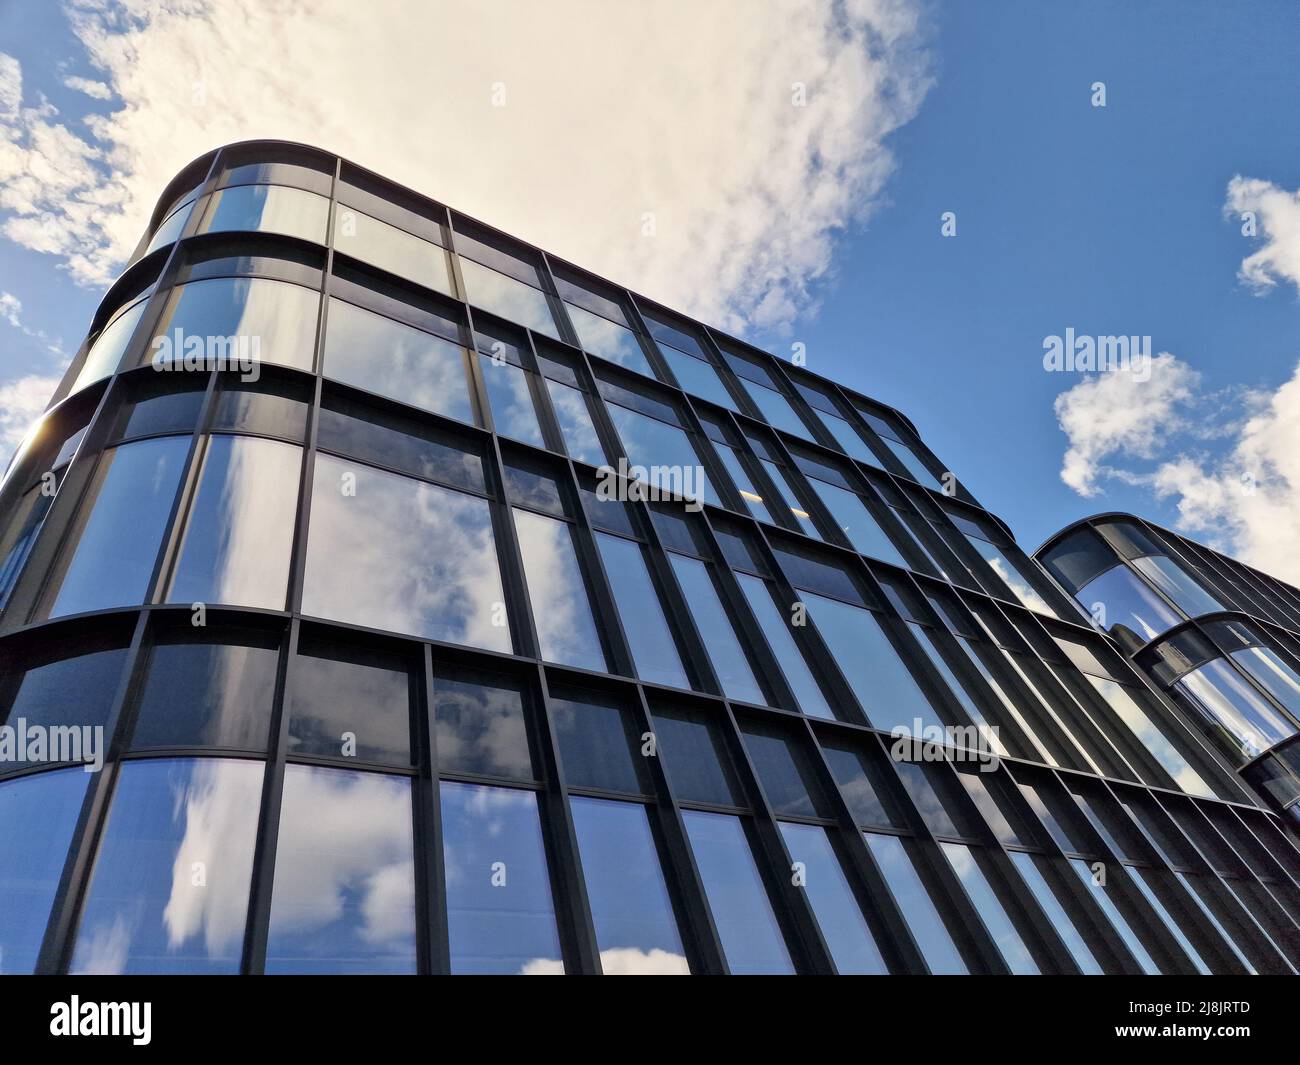 Architettura moderna e riflesso dal cielo nuvoloso blu. Il concetto di investimento immobiliare Foto Stock